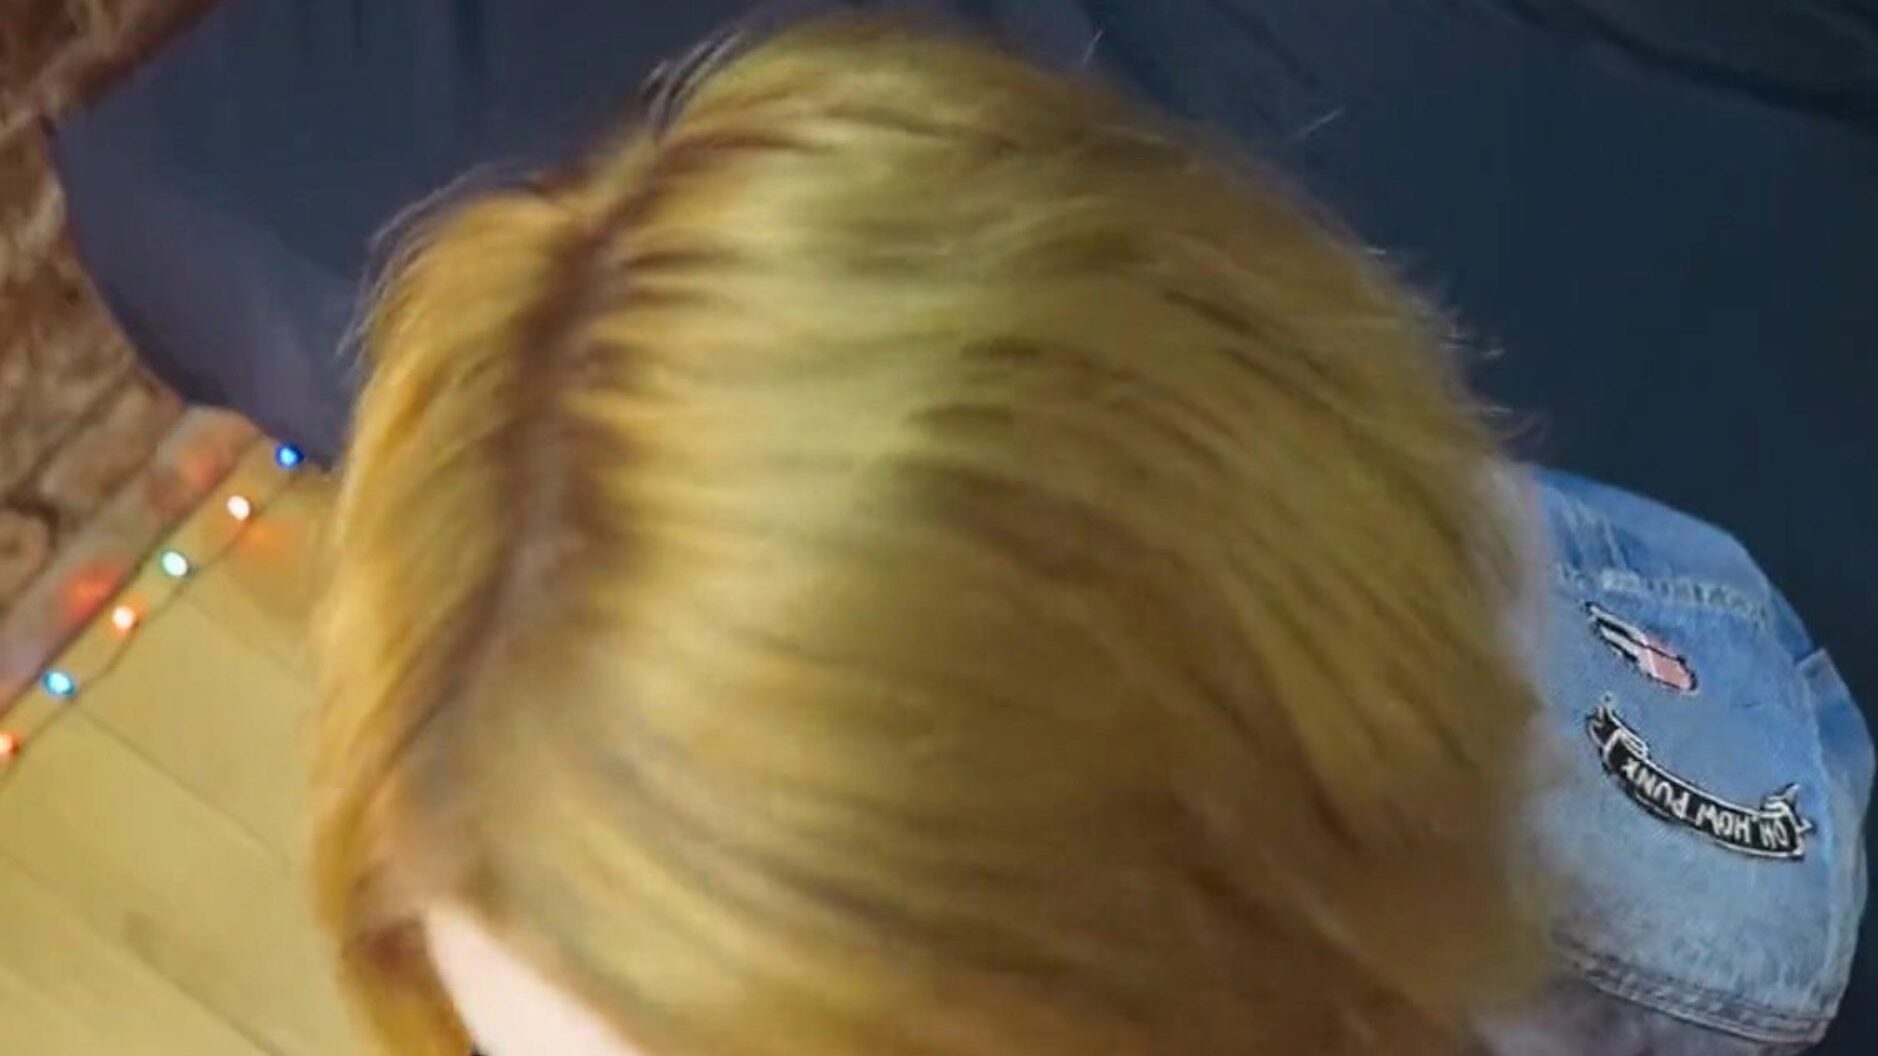 ראש אדום משקפי שיער קצרים מציצה מרושלת ופנים